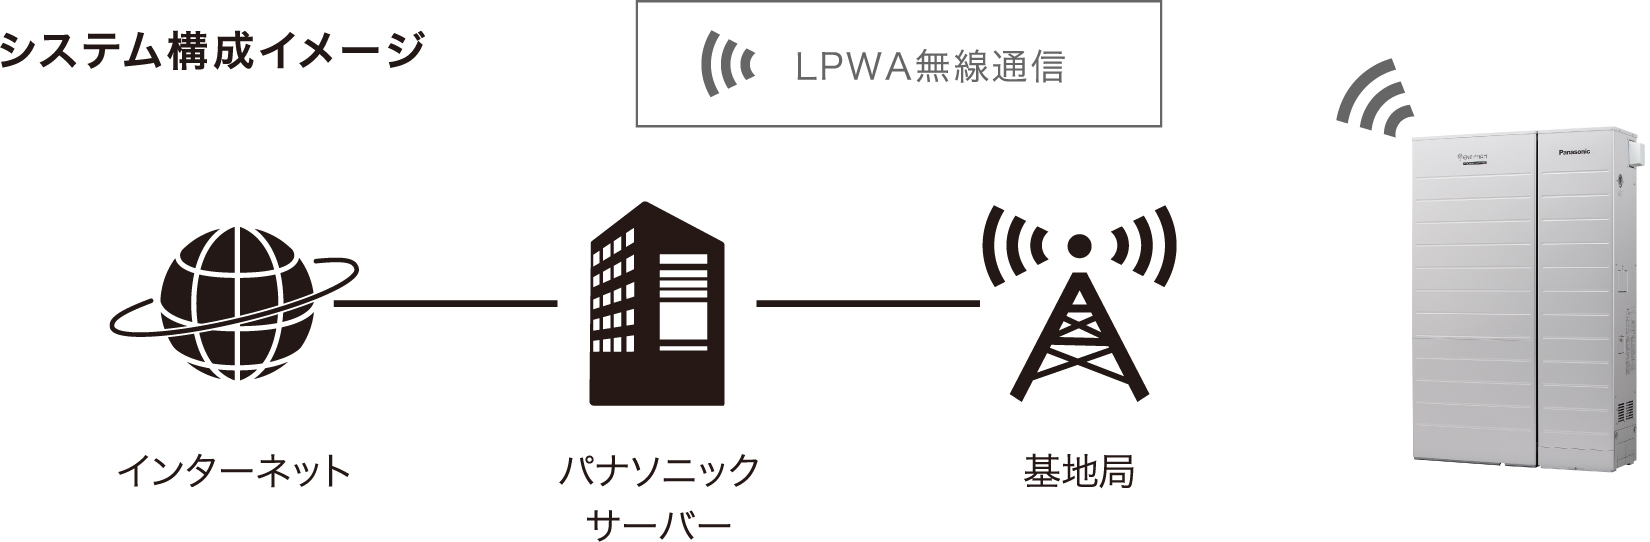 システム構成イメージ図：LPWA通信機能を搭載したエネファーム―基地局―パナソニックサーバ―インターネット